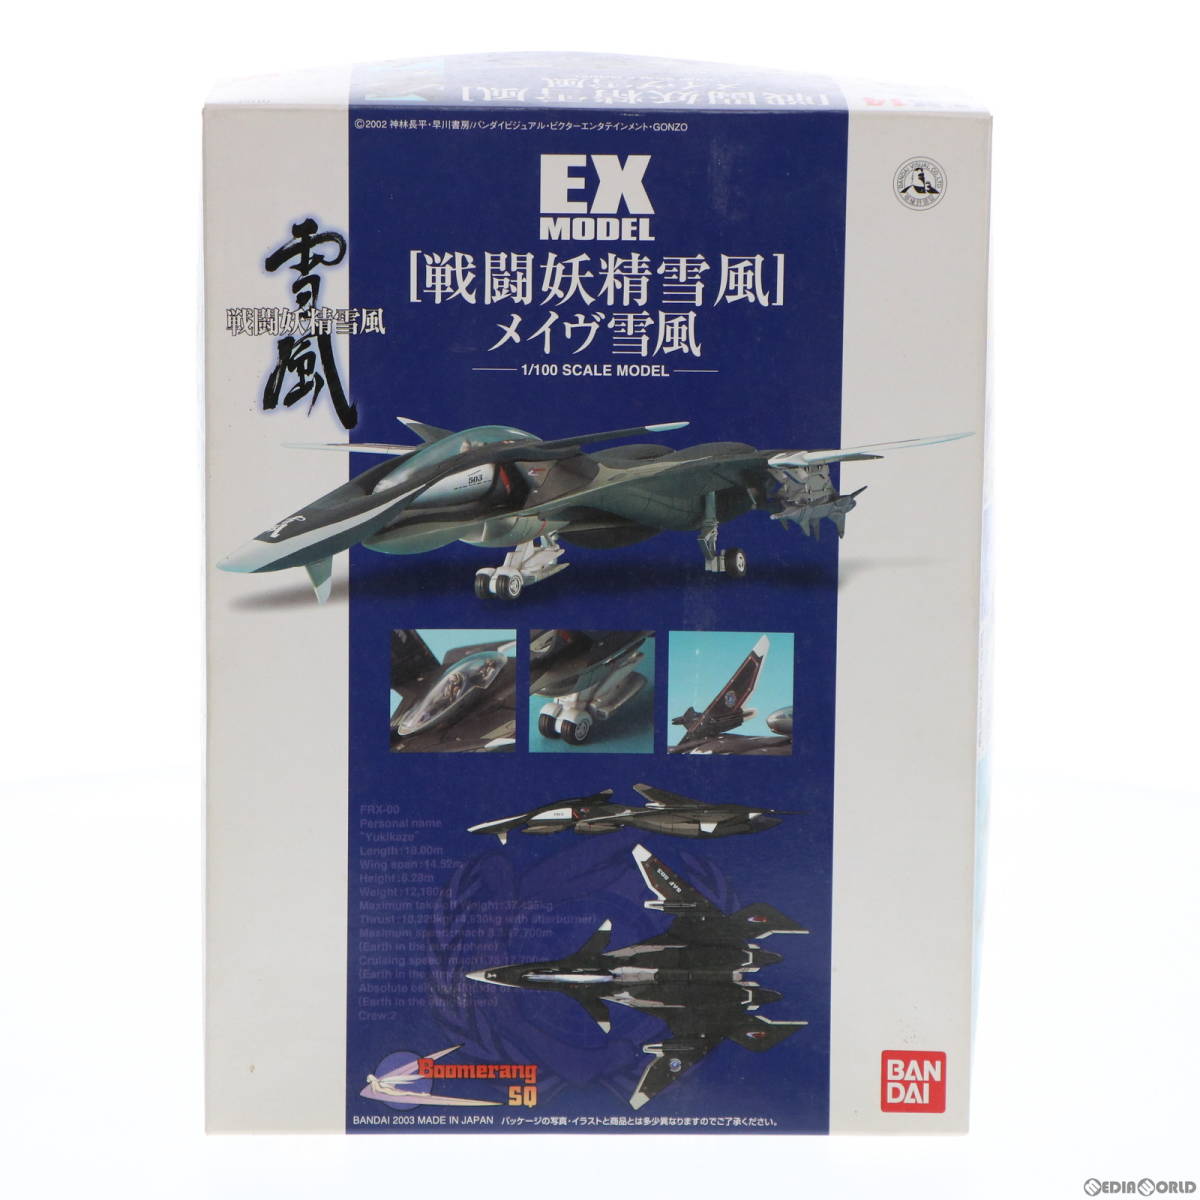 戦闘機模型(34機) バラ×、まとめて○ www.pa-bekasi.go.id